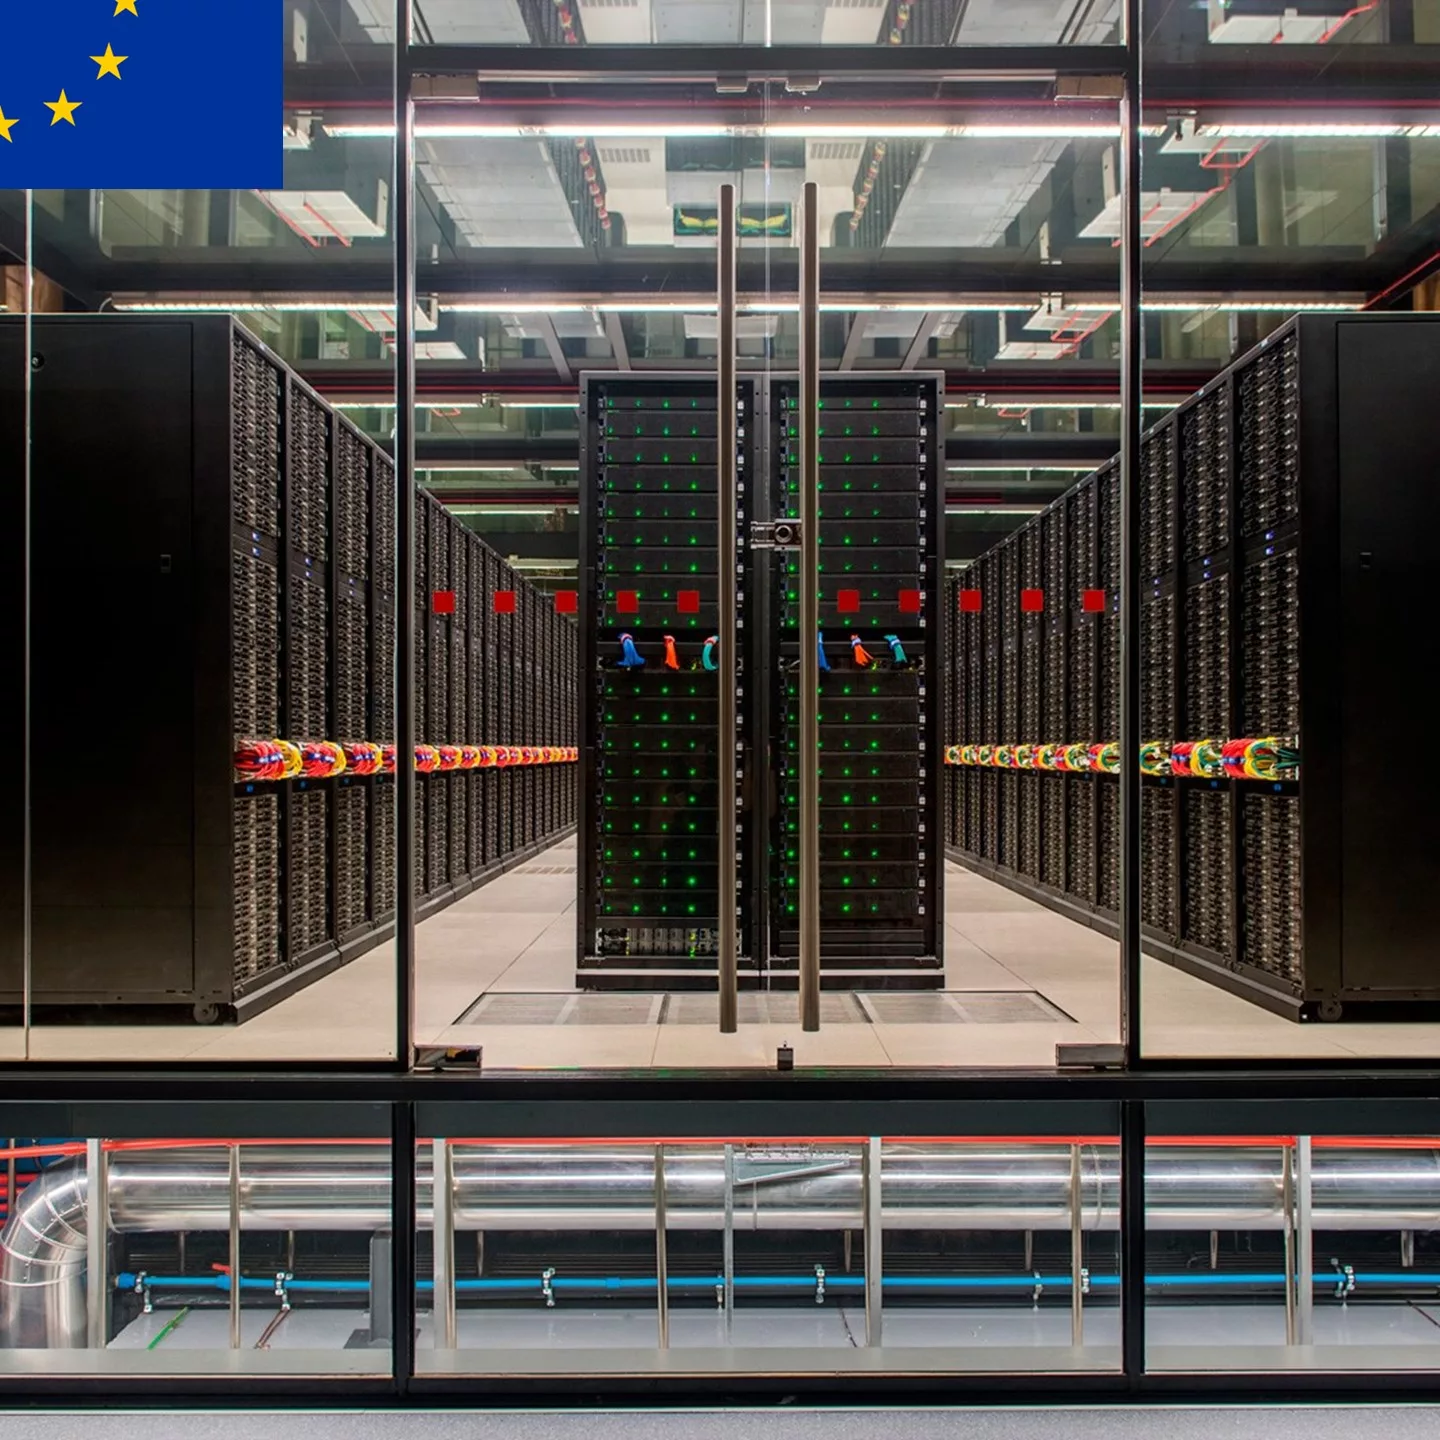 Comisia Europeană prezintă cele mai puternice computere din UE